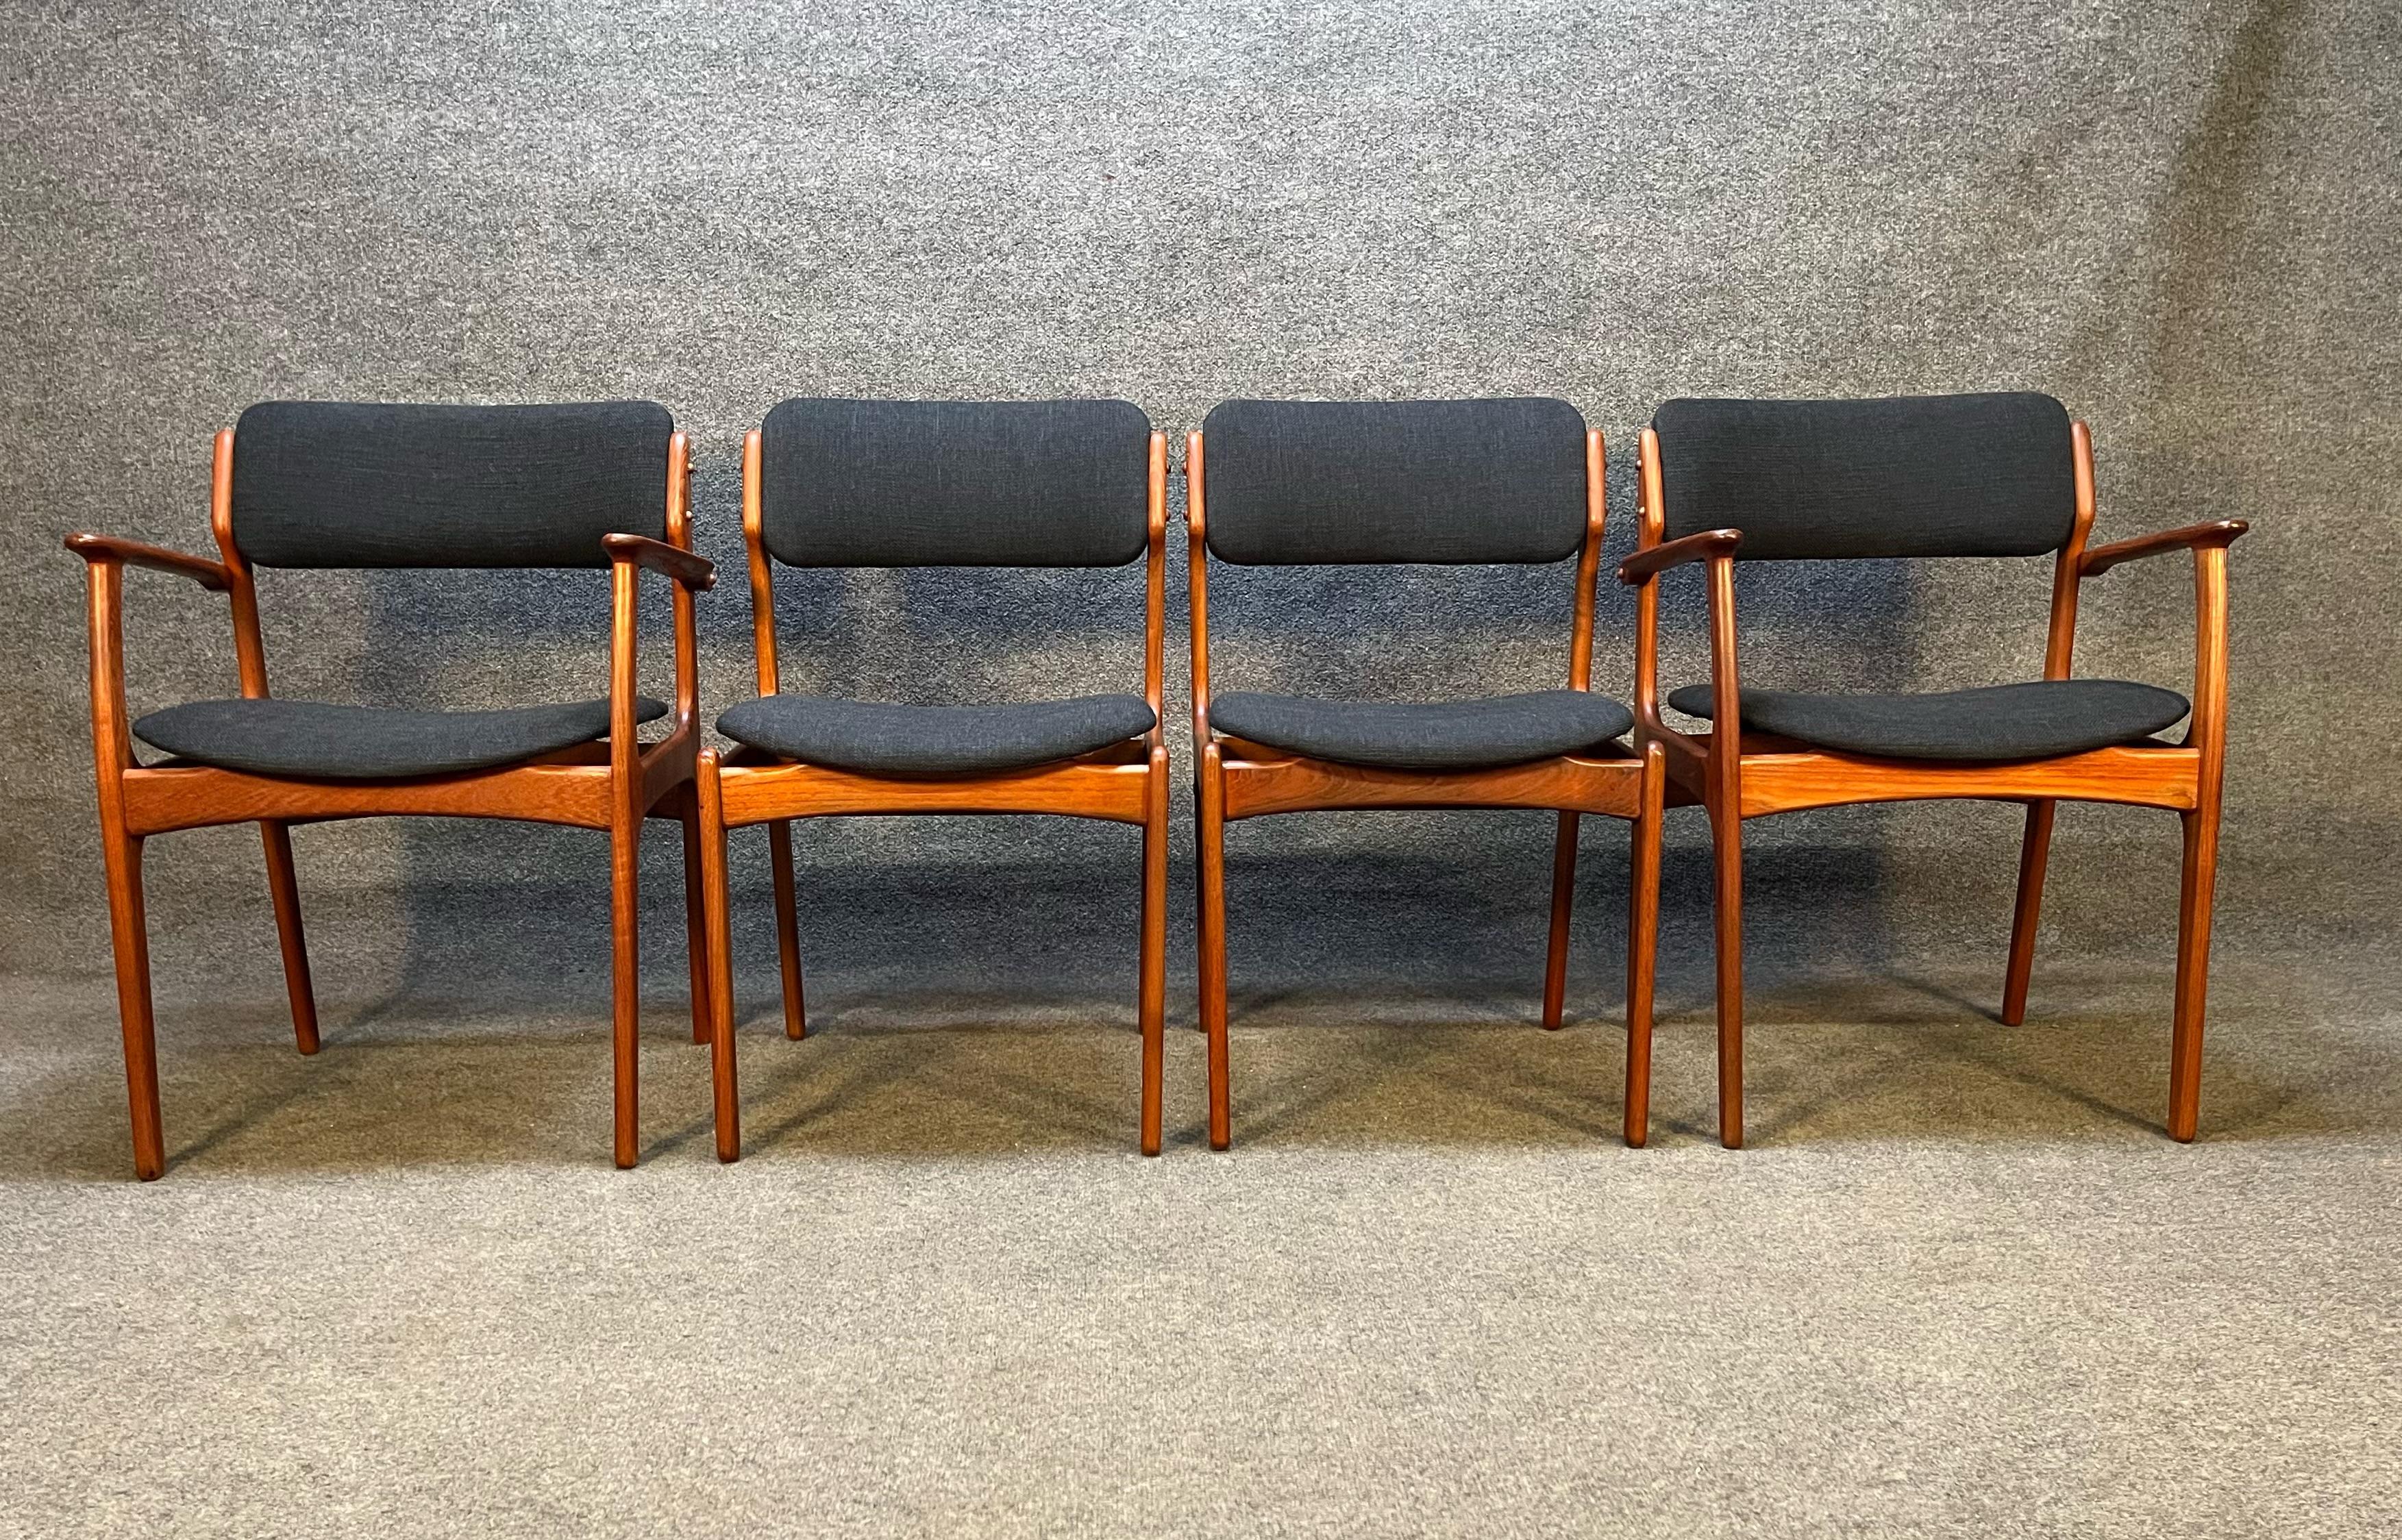 Hier ist eine erstaunliche Reihe von 4 der Quintessenz dänischen Teakholz Esszimmerstühle von Erik Buch Modell 49 und 50 entworfen. Diese Stühle wurden komplett neu lackiert und haben brandneuen anthrazitfarbenen Stoff und Schaumstoff. Dieses Set